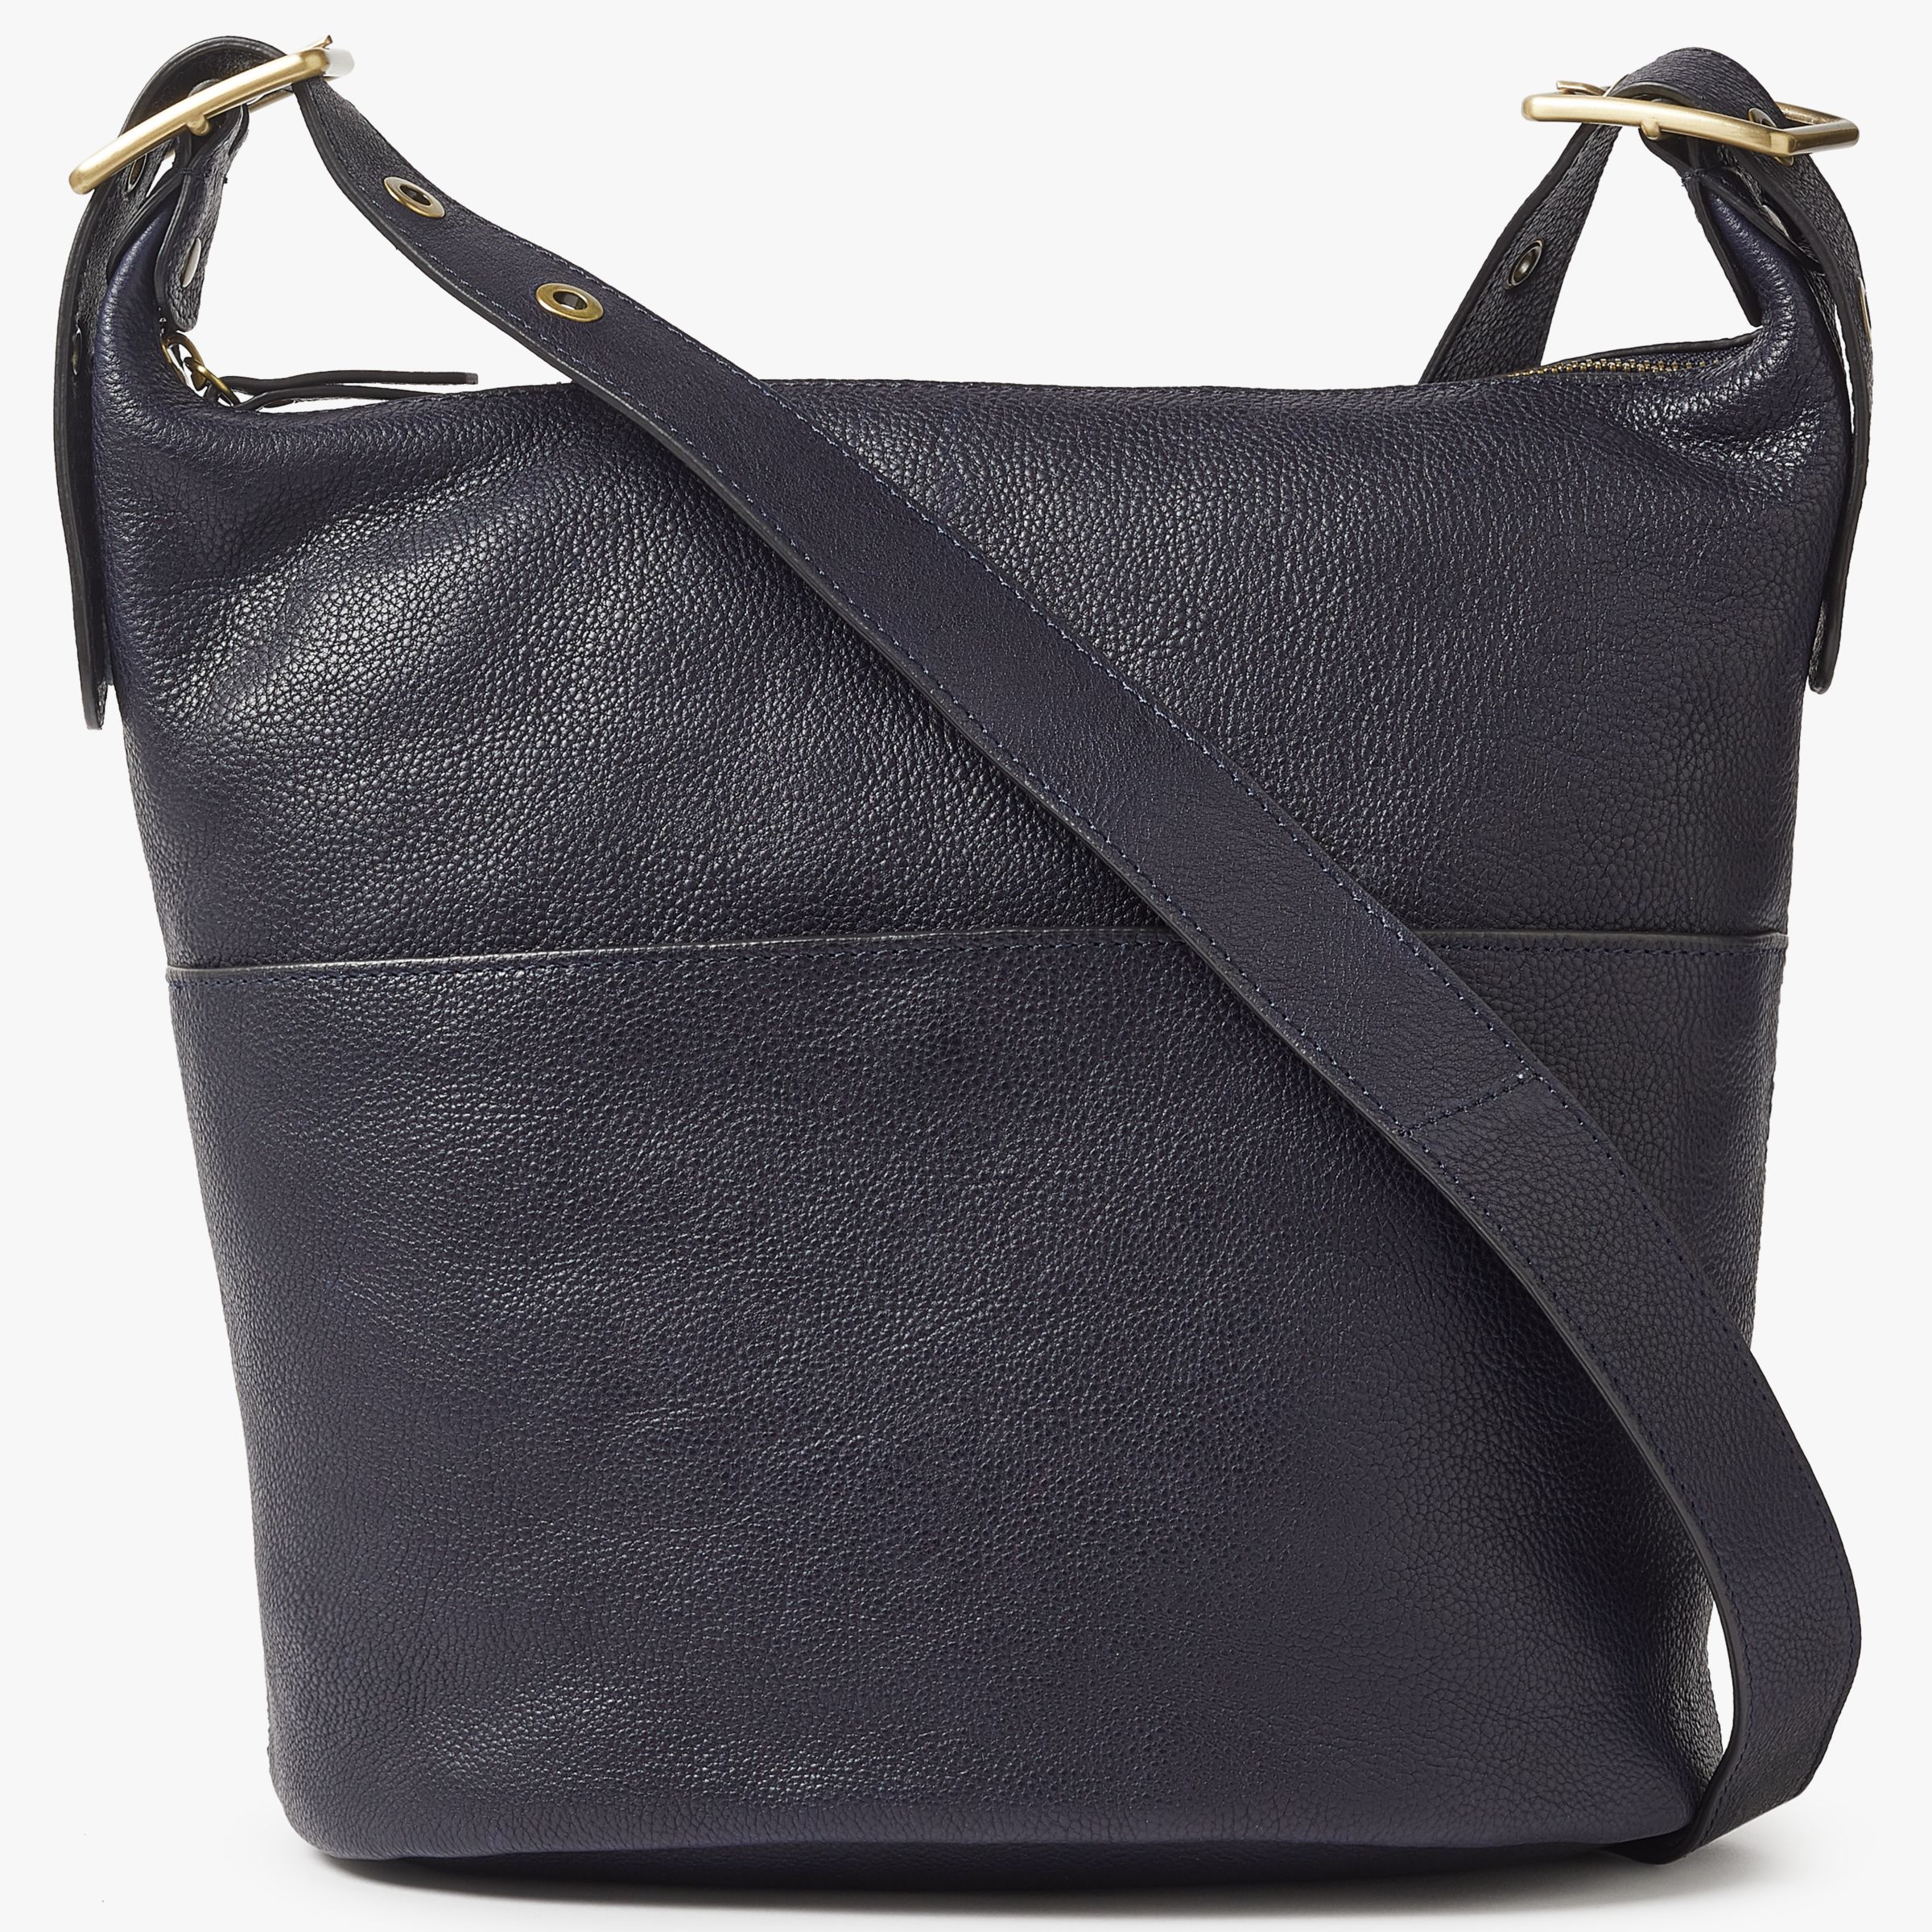 John Lewis & Partners Kepley Leather Shoulder Bag